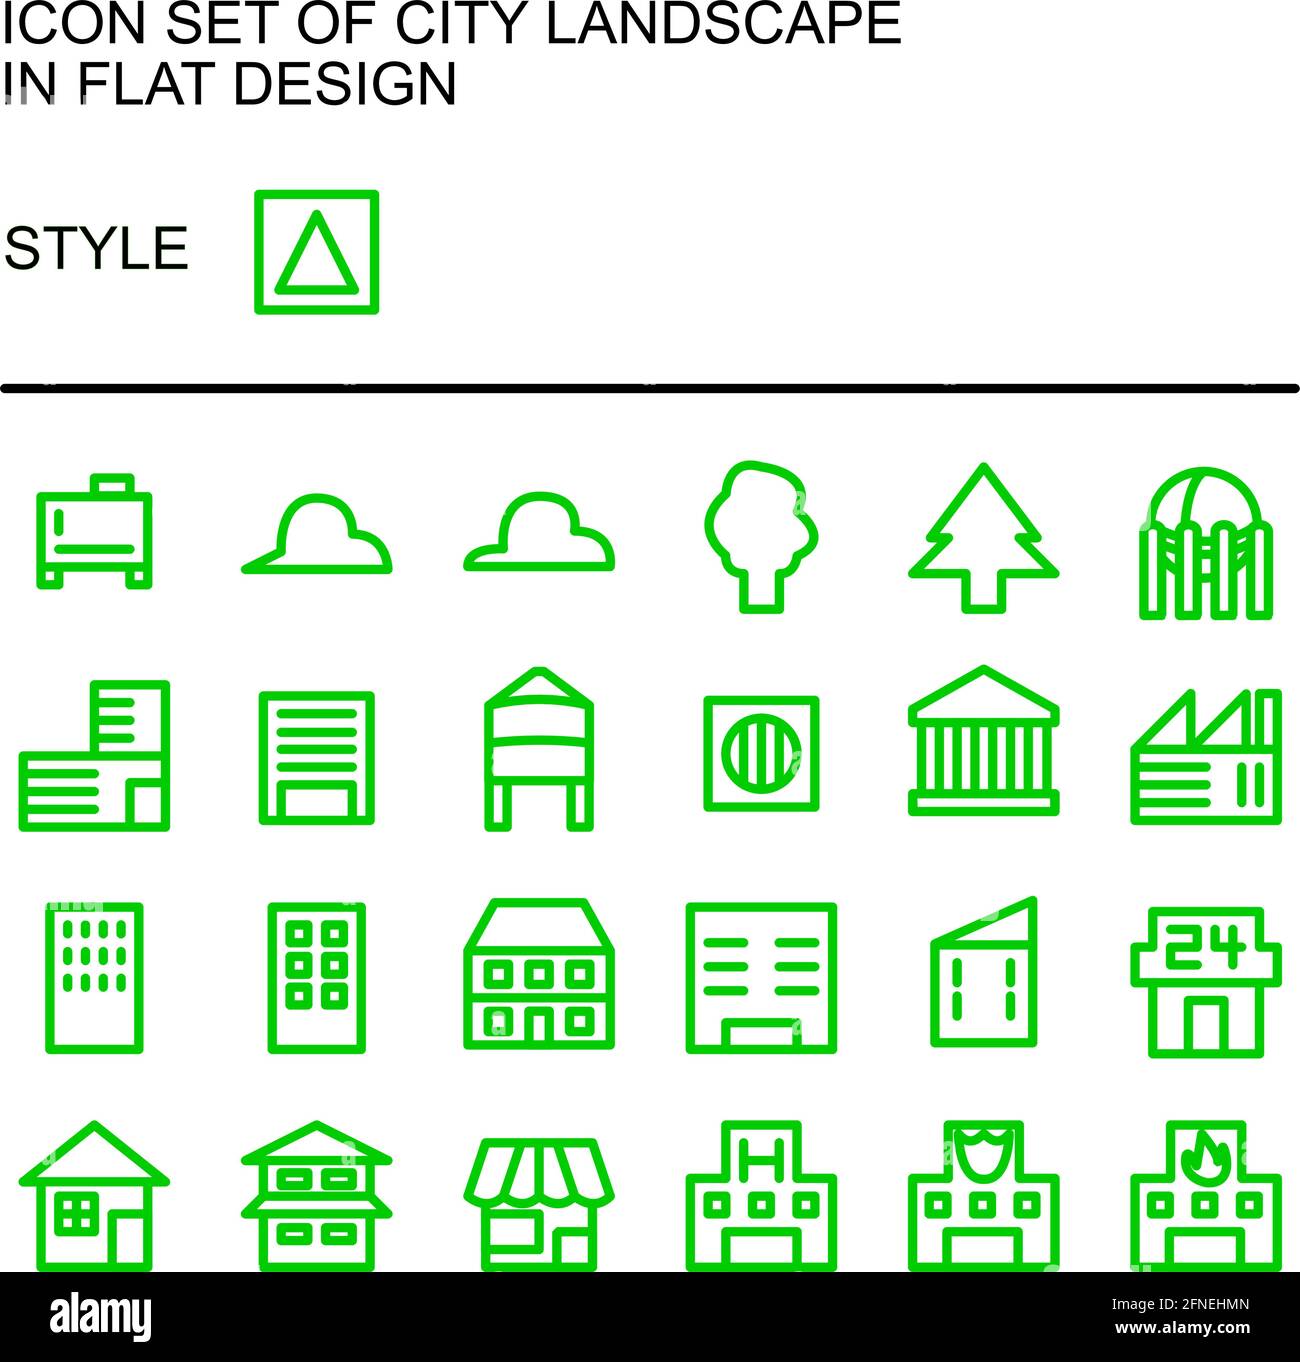 Icona del paesaggio urbano in design piatto con linee verdi, riempimenti bianchi. Illustrazione Vettoriale